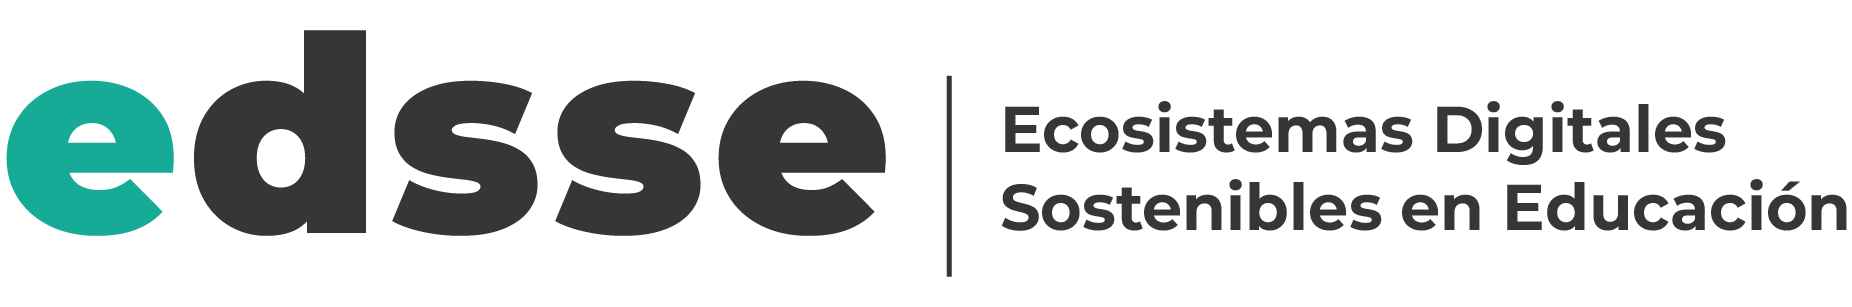 Ecosistemes Digitals Sostenibles en Educació (EDSSE)